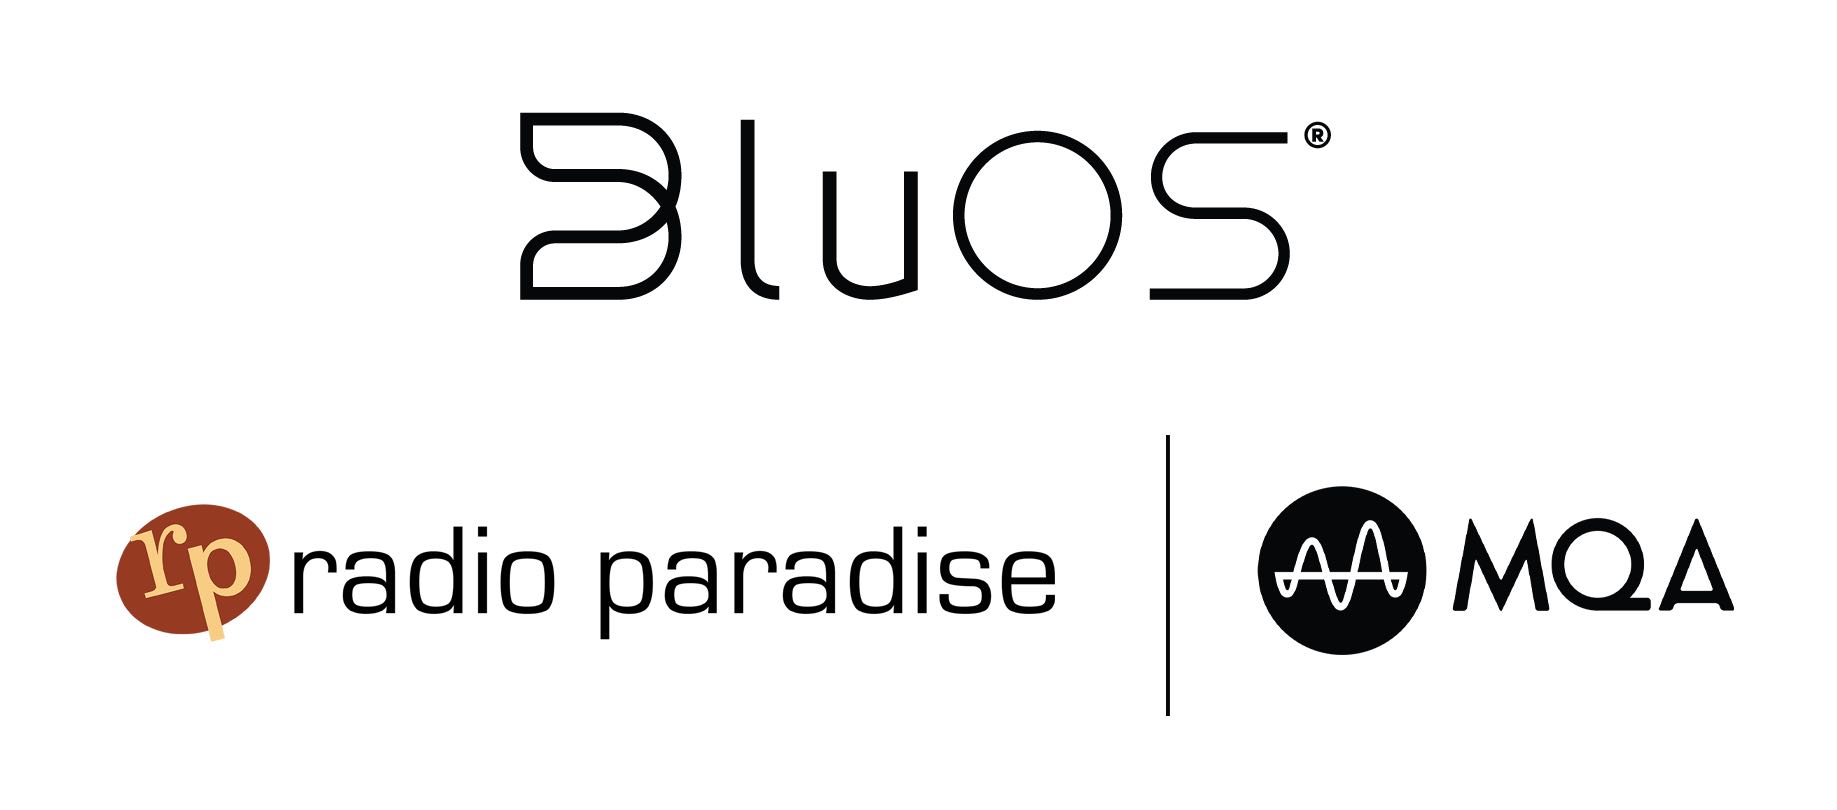 推荐 | 乐园电台（Radio Paradise）MQA音频技术专供BluOS播放器-影音新生活